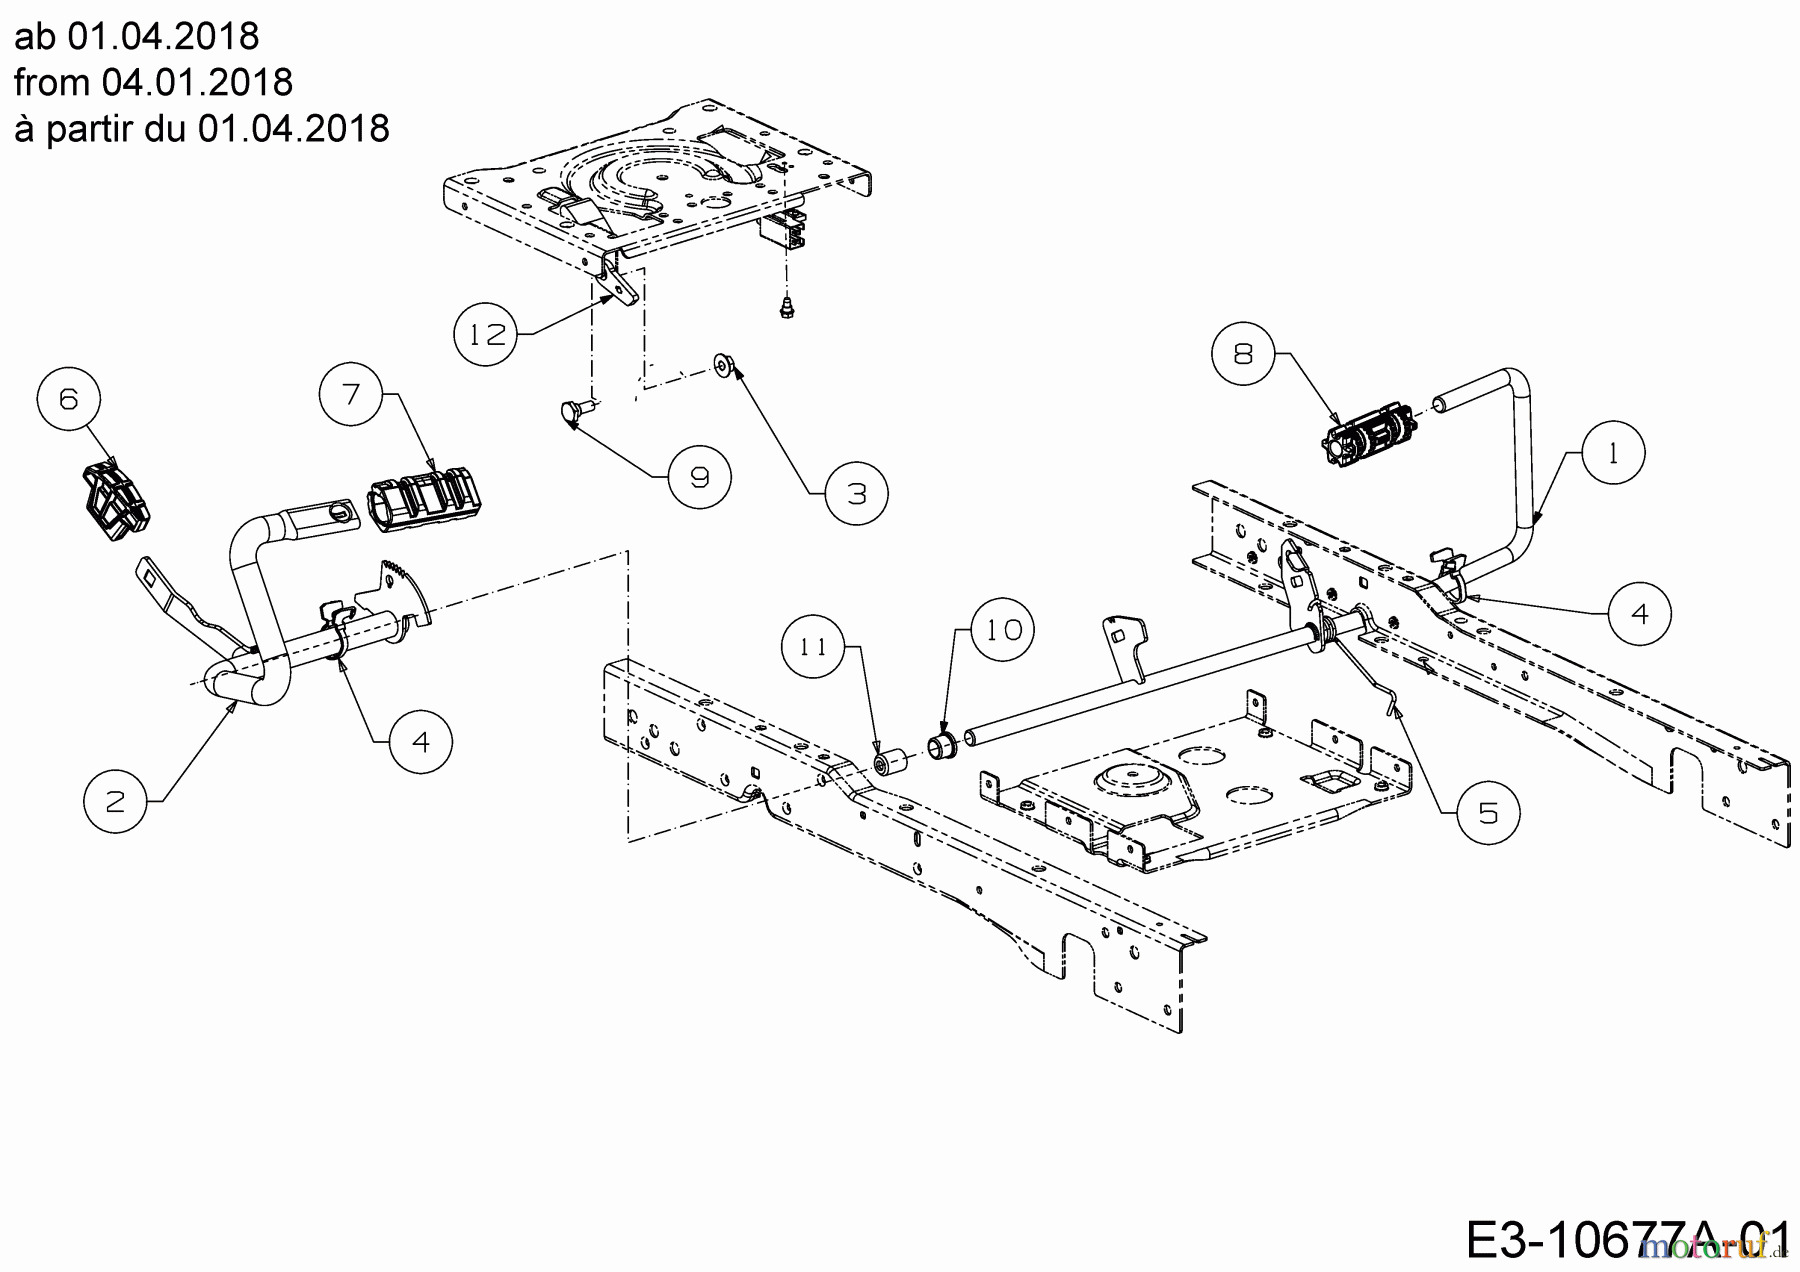  Cub Cadet Lawn tractors XT2 PS107 13AGA1CS603  (2020) Pedals from 04.01.2018